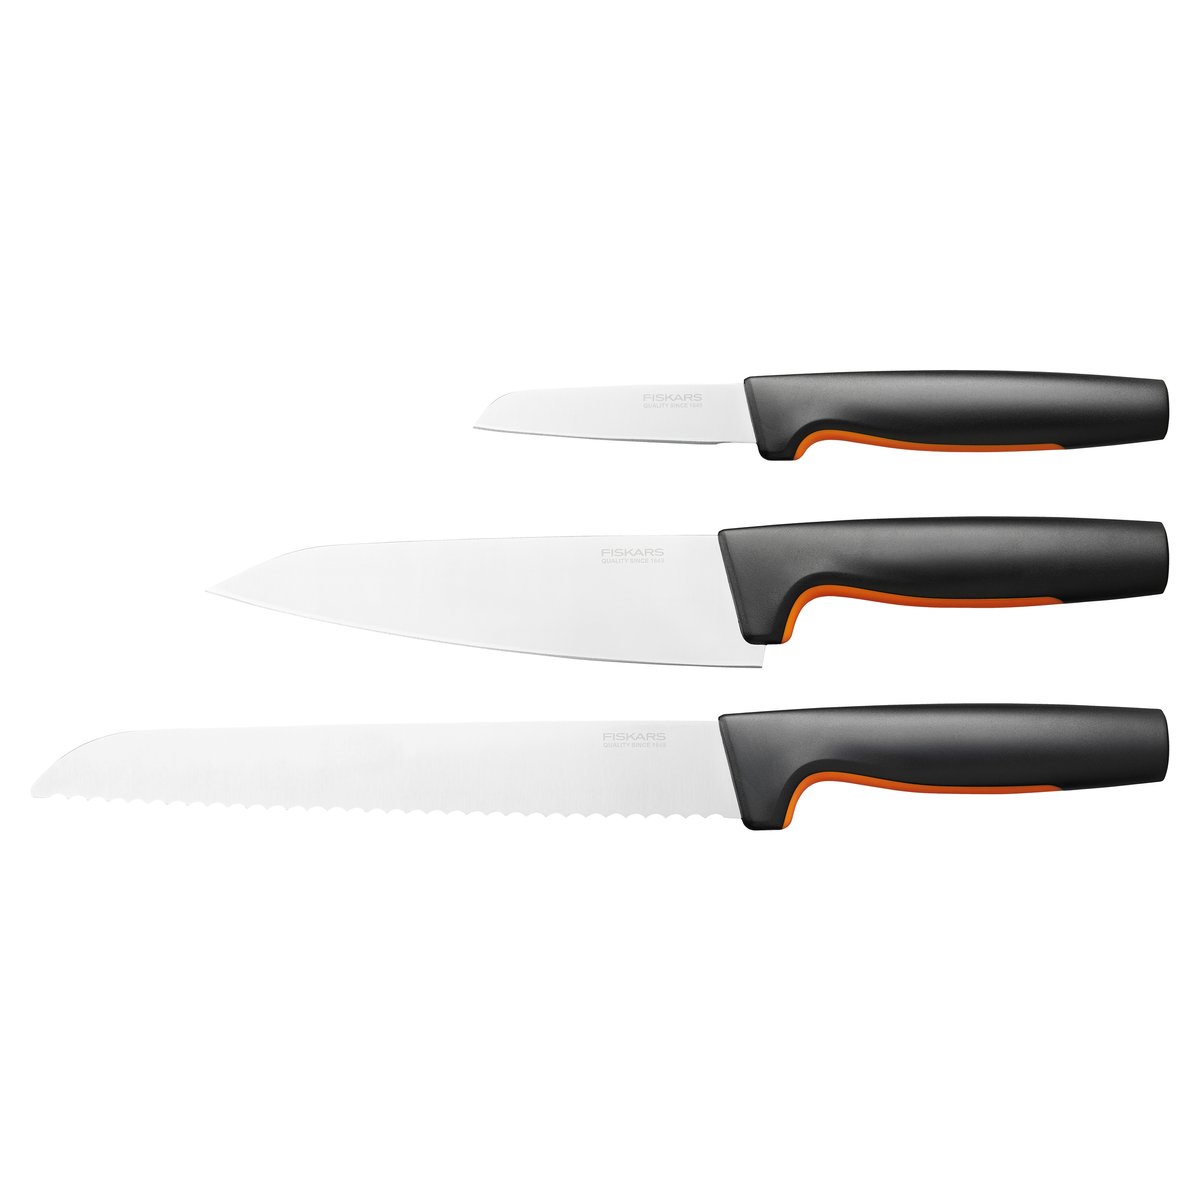 #1 på vores liste over knive er Knivsæt